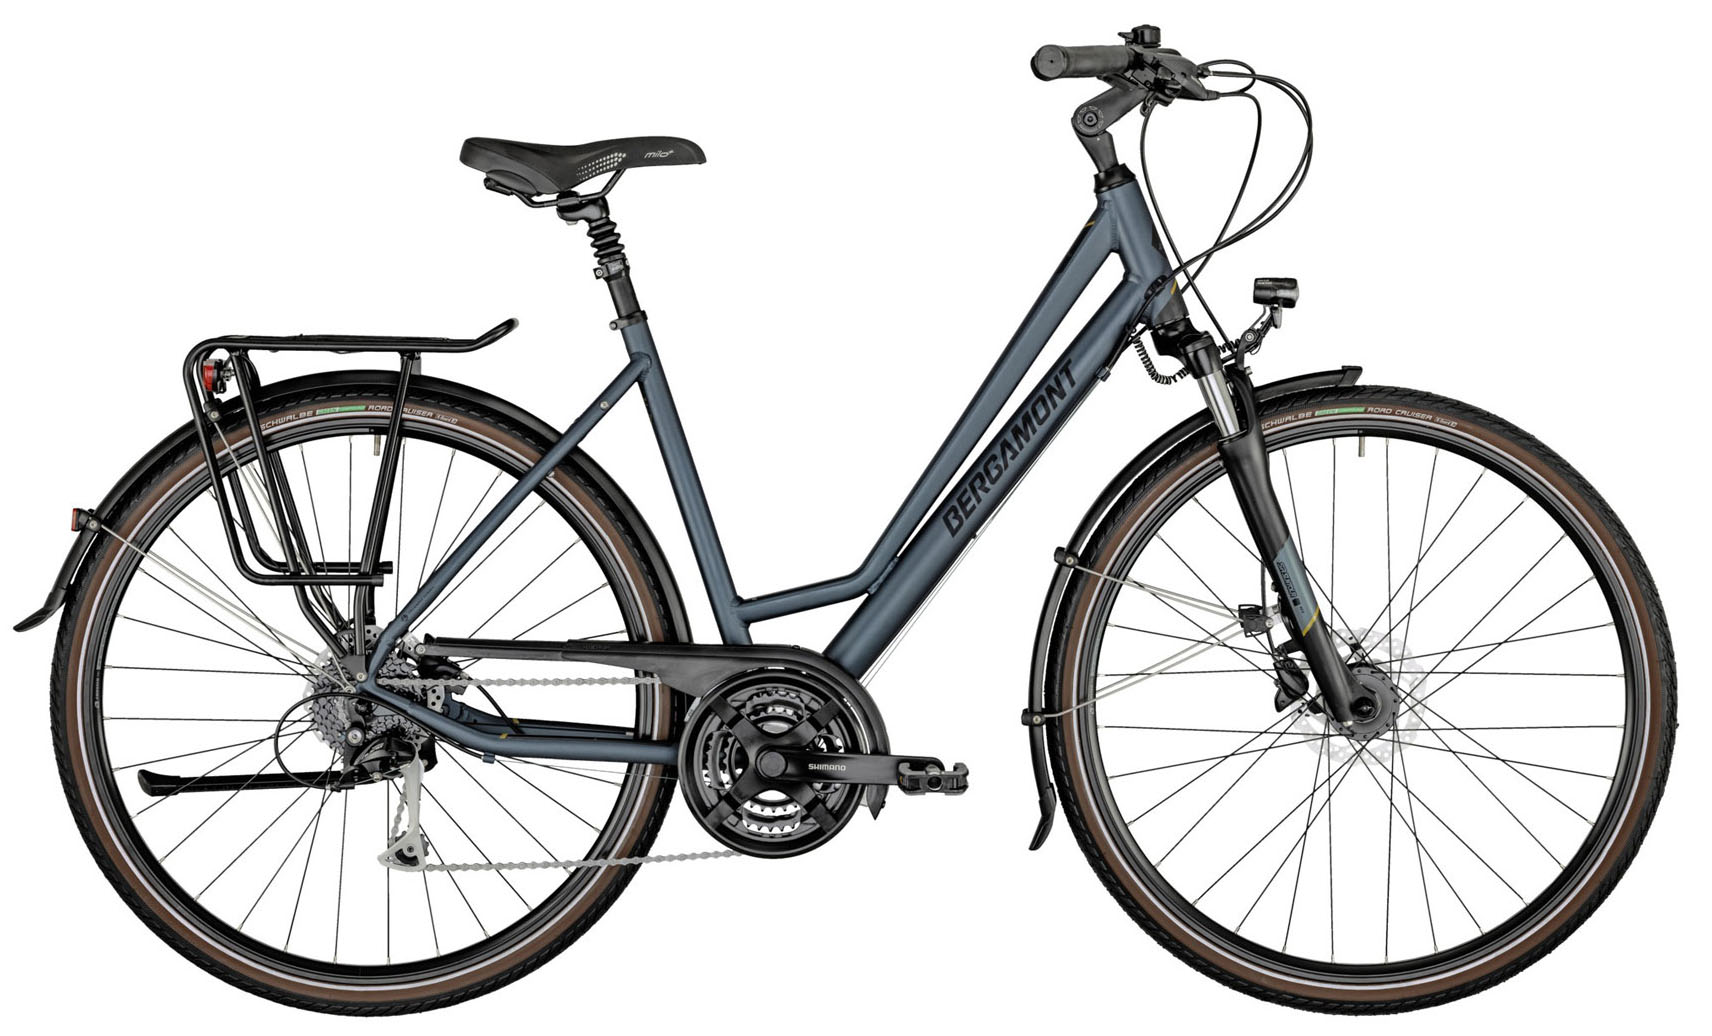  Отзывы о Женском велосипеде Bergamont Horizon 4 Amsterdam 2021